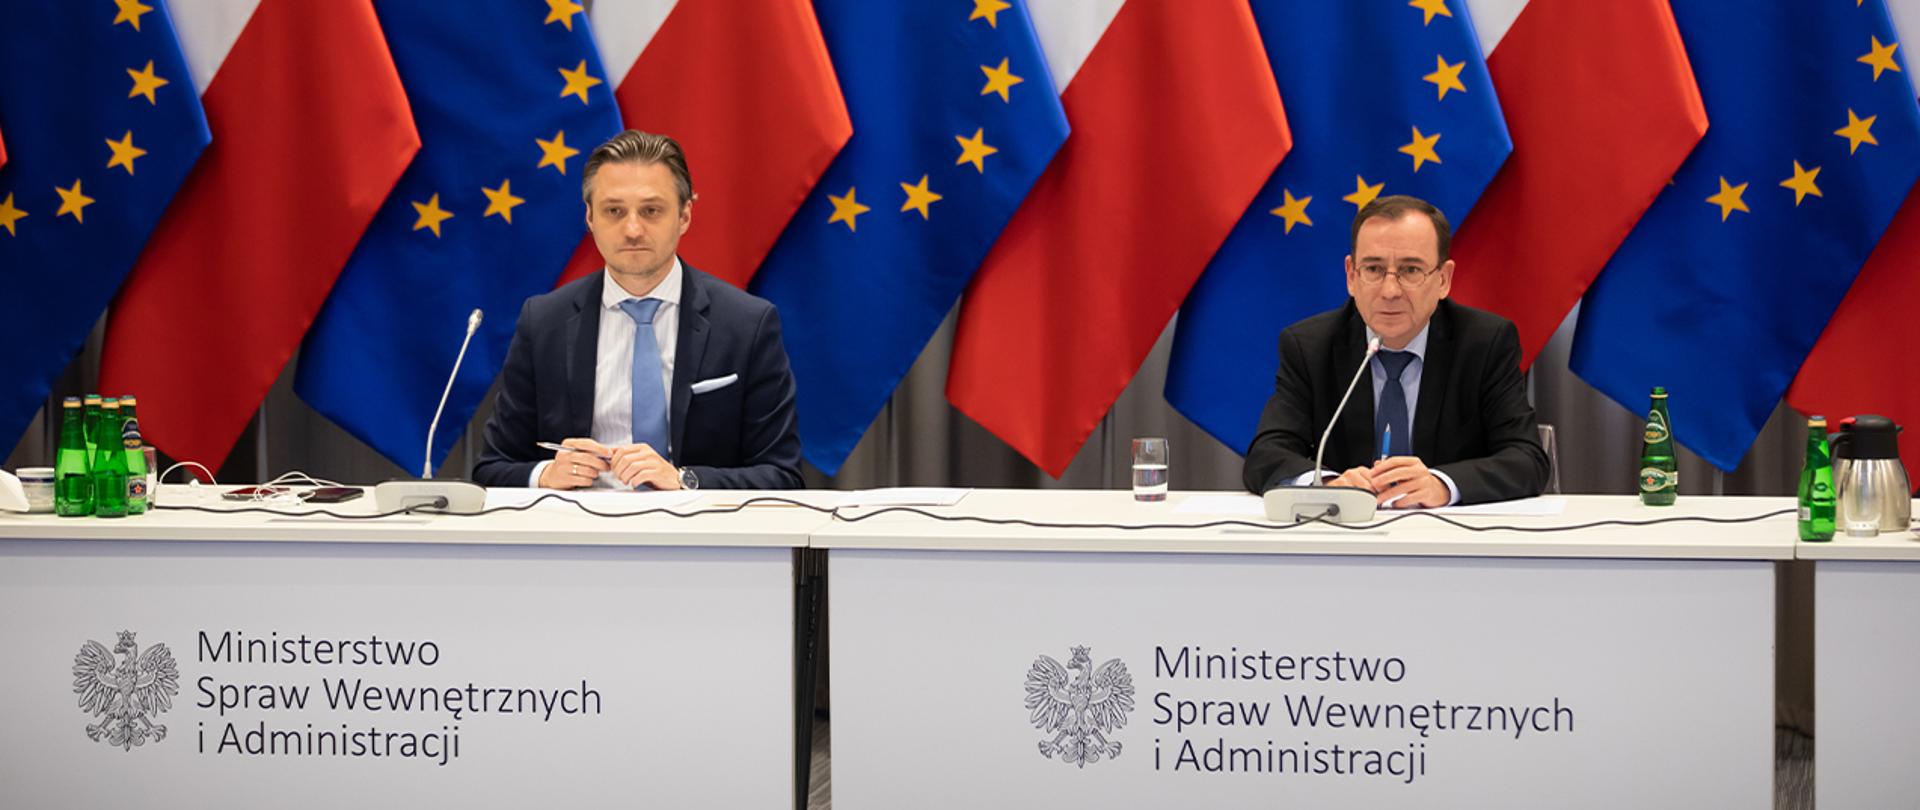 Na zdjęciu widać Mariusza Kamińskiego ministra SWiA i Bartosza Grodeckiego wiceministra SWiA siedzących za stołem w trakcie wideokonferencji. W tle widać rząd flag narodowych i UE ustawionych naprzemiennie.